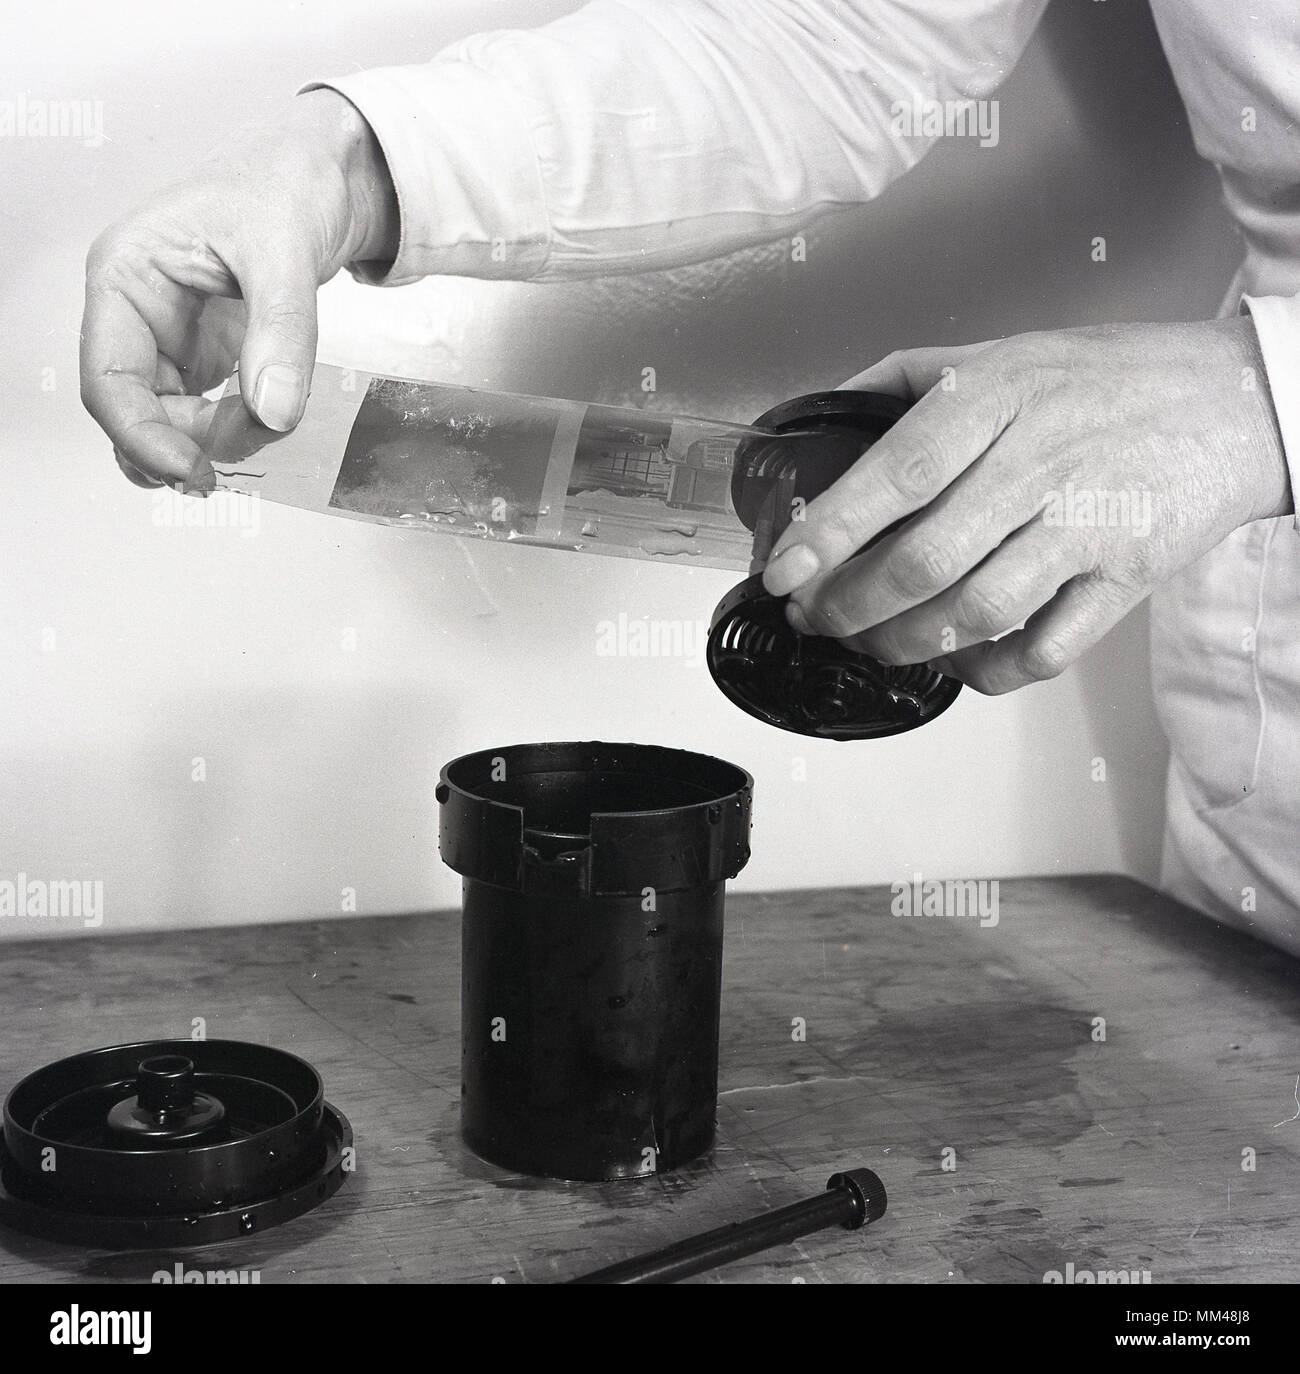 1950, foto histórica mostrando una tira de negativos de película tras haber sido sacado de la solución química utilizada para desarrollar la película fotográfica en blanco y negro. Foto de stock